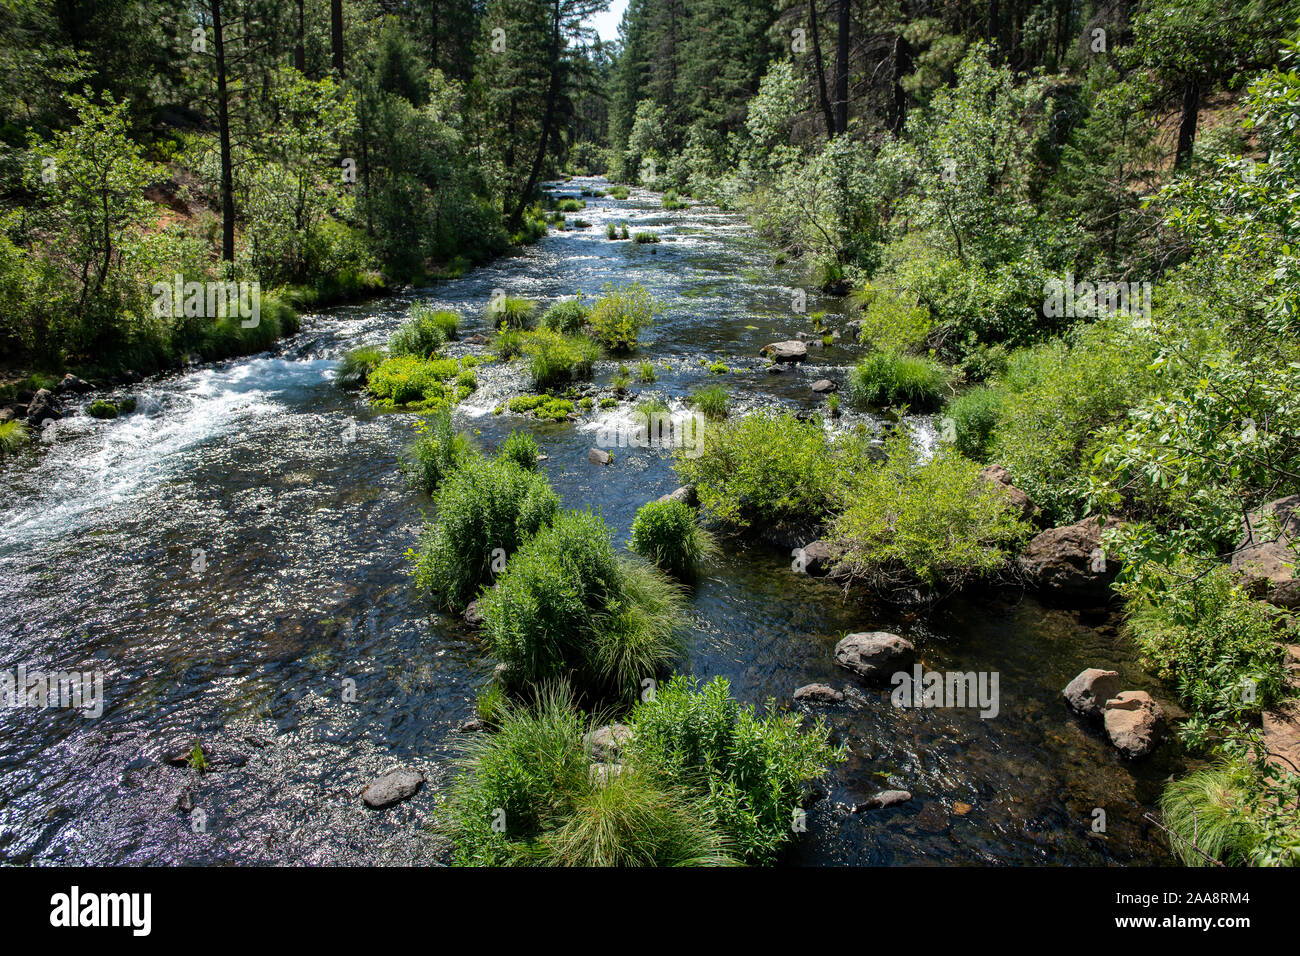 Scenic Burney creek in Shasta County California Stock Photo